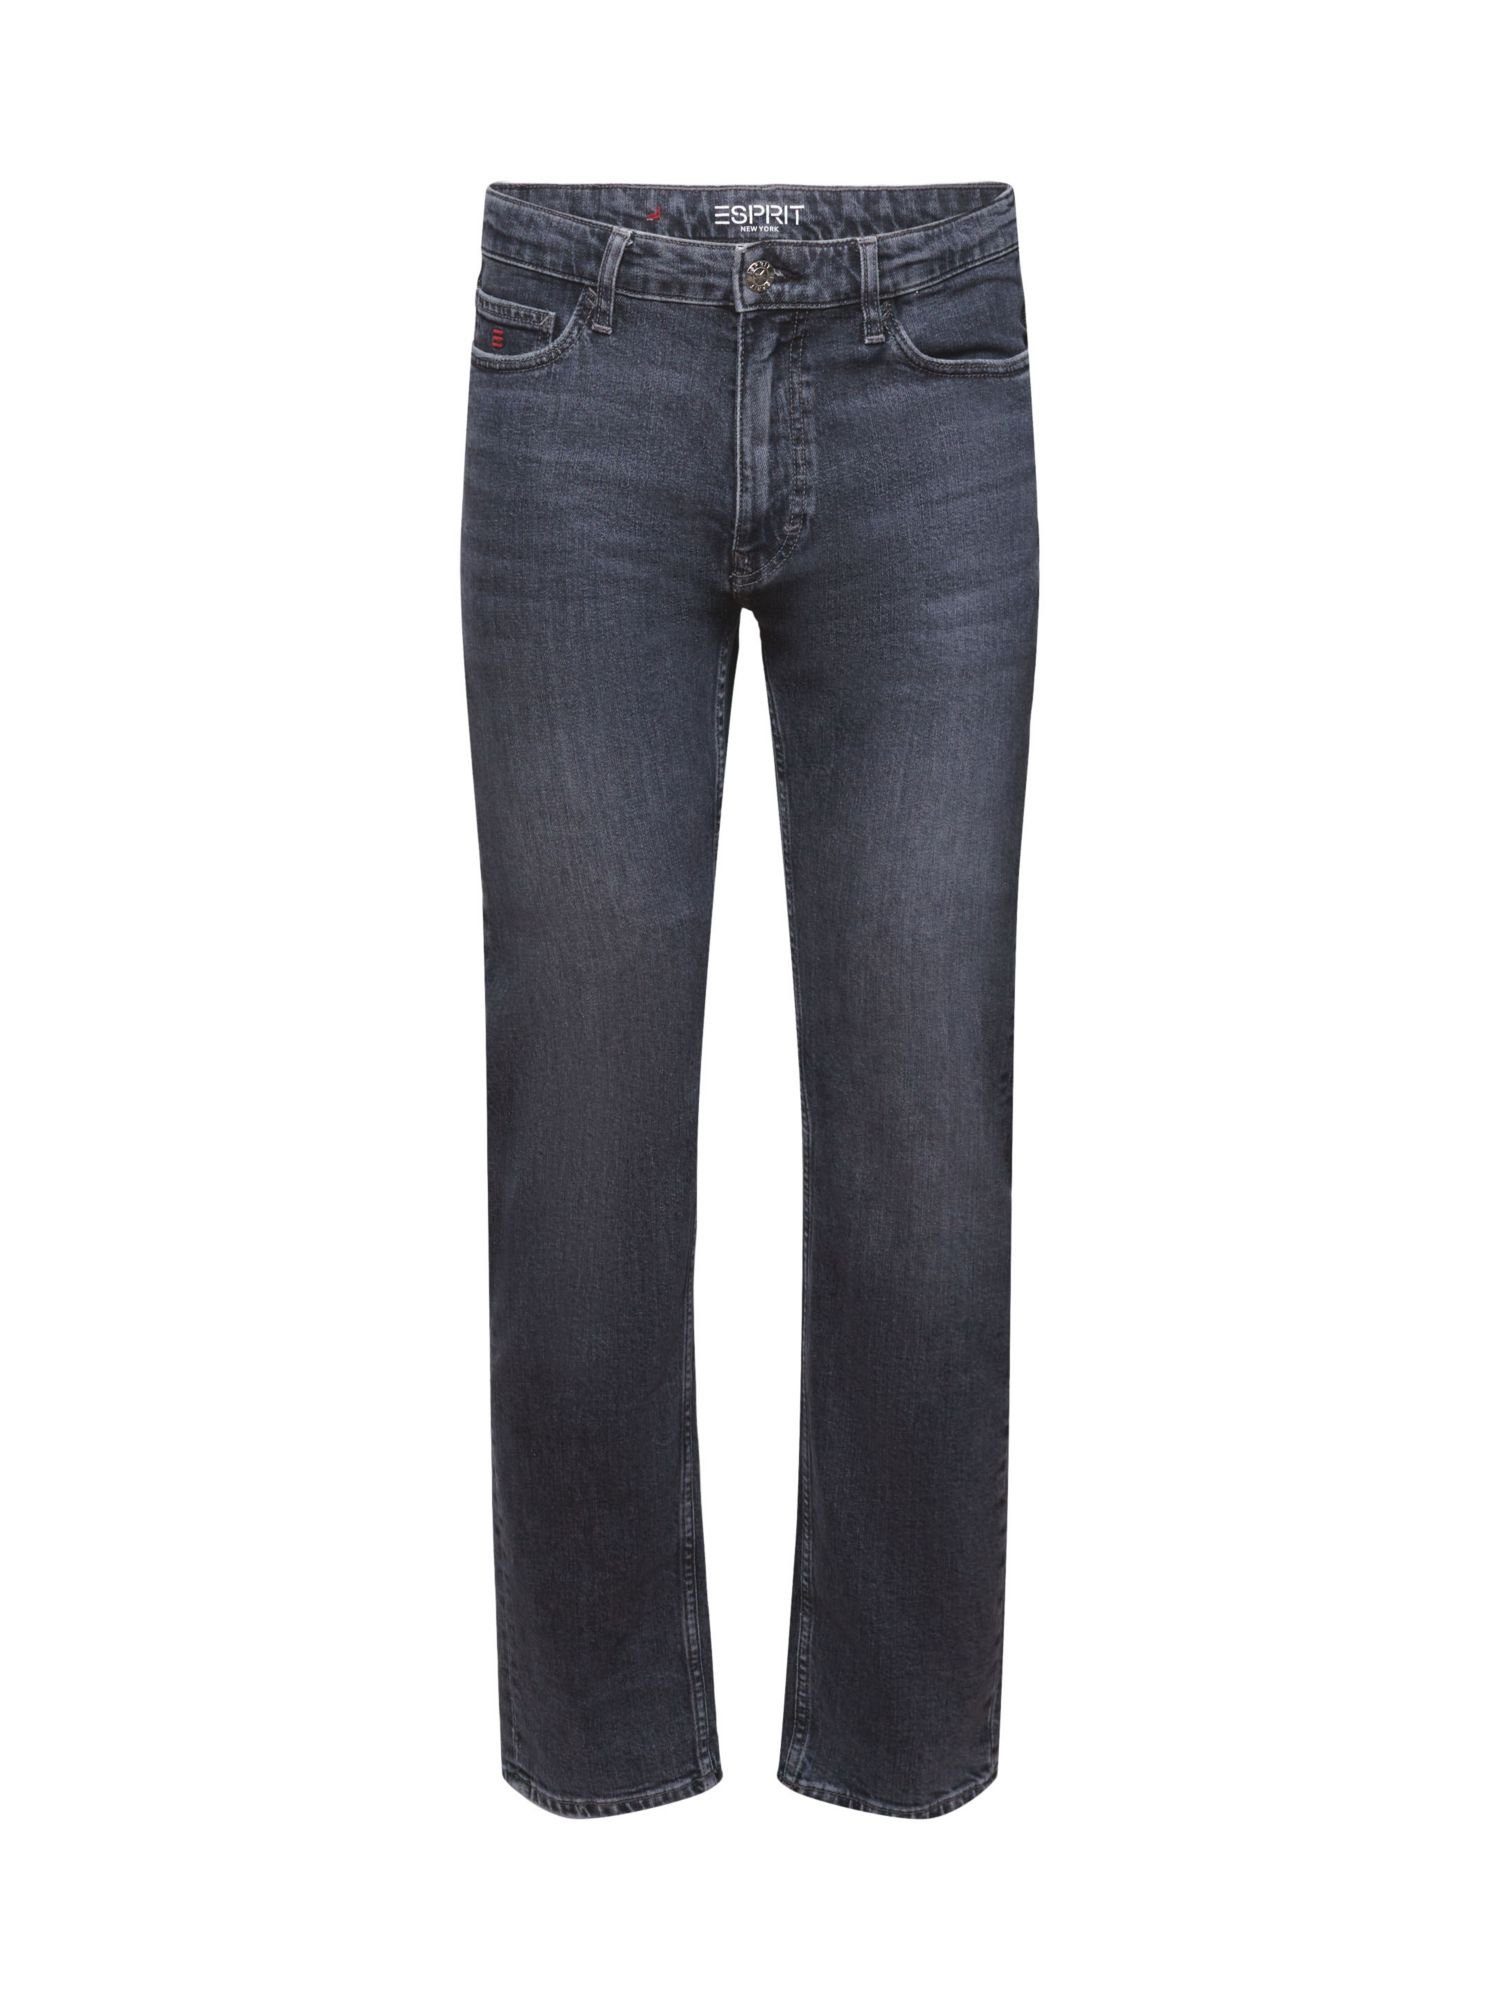 Esprit Straight-Jeans Jeans mit geradem Bein und mittelhohem Bund